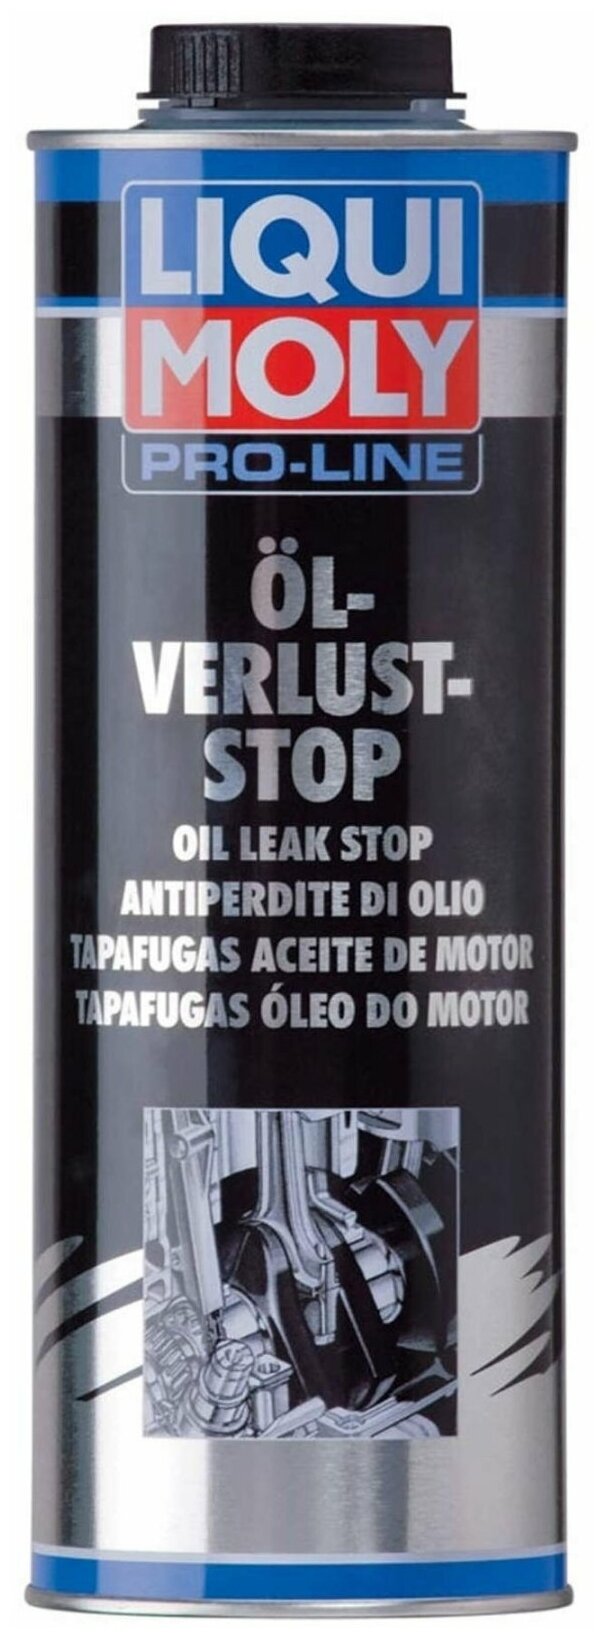 Герметик для ремонта автомобиля LIQUI MOLY Pro-Line Oil-Verlust-Stop 5182 1000 мл